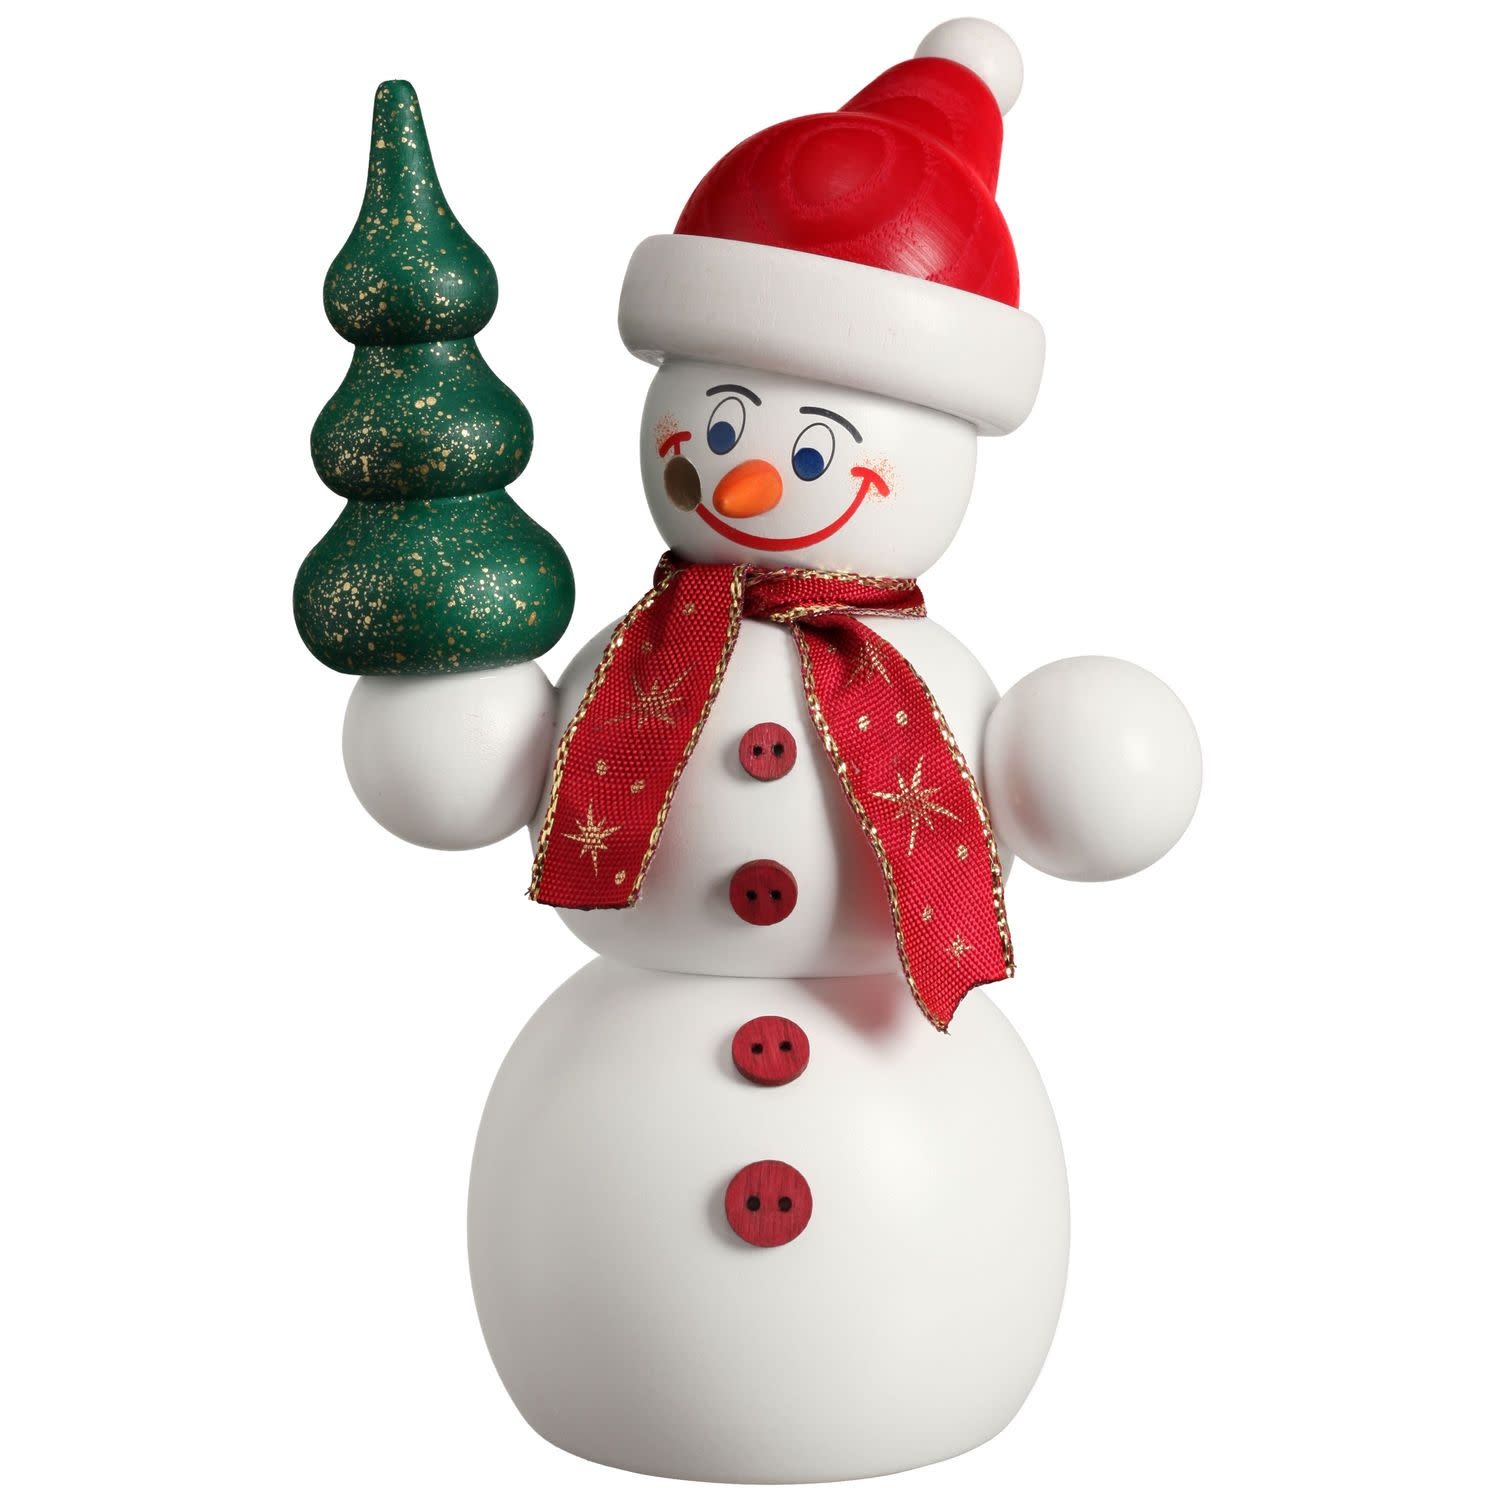 Seiffener Volkskunst eG 12212 Smoking man snowman Santa Claus  6 inches